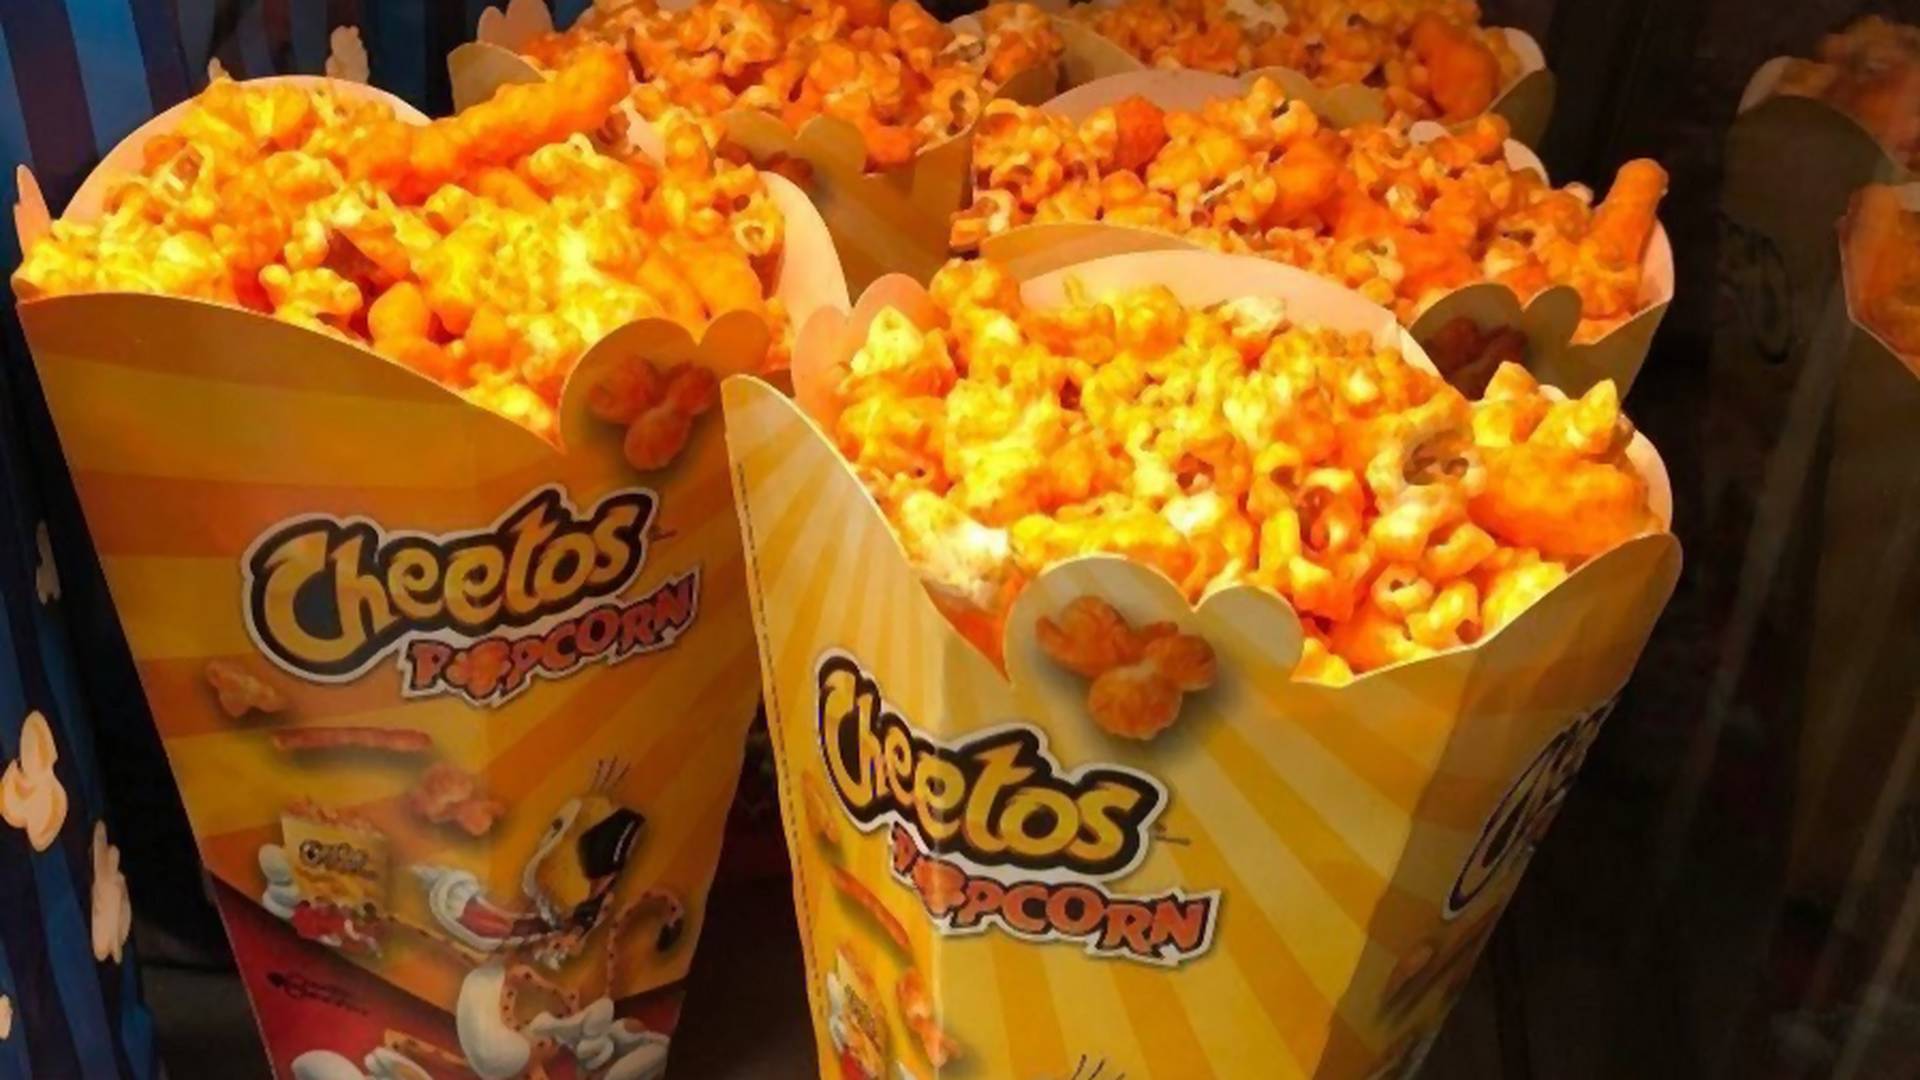 Jest kino, które serwuje popcorn o smaku Cheetosów. Właśnie tam chcielibyśmy oglądać filmy